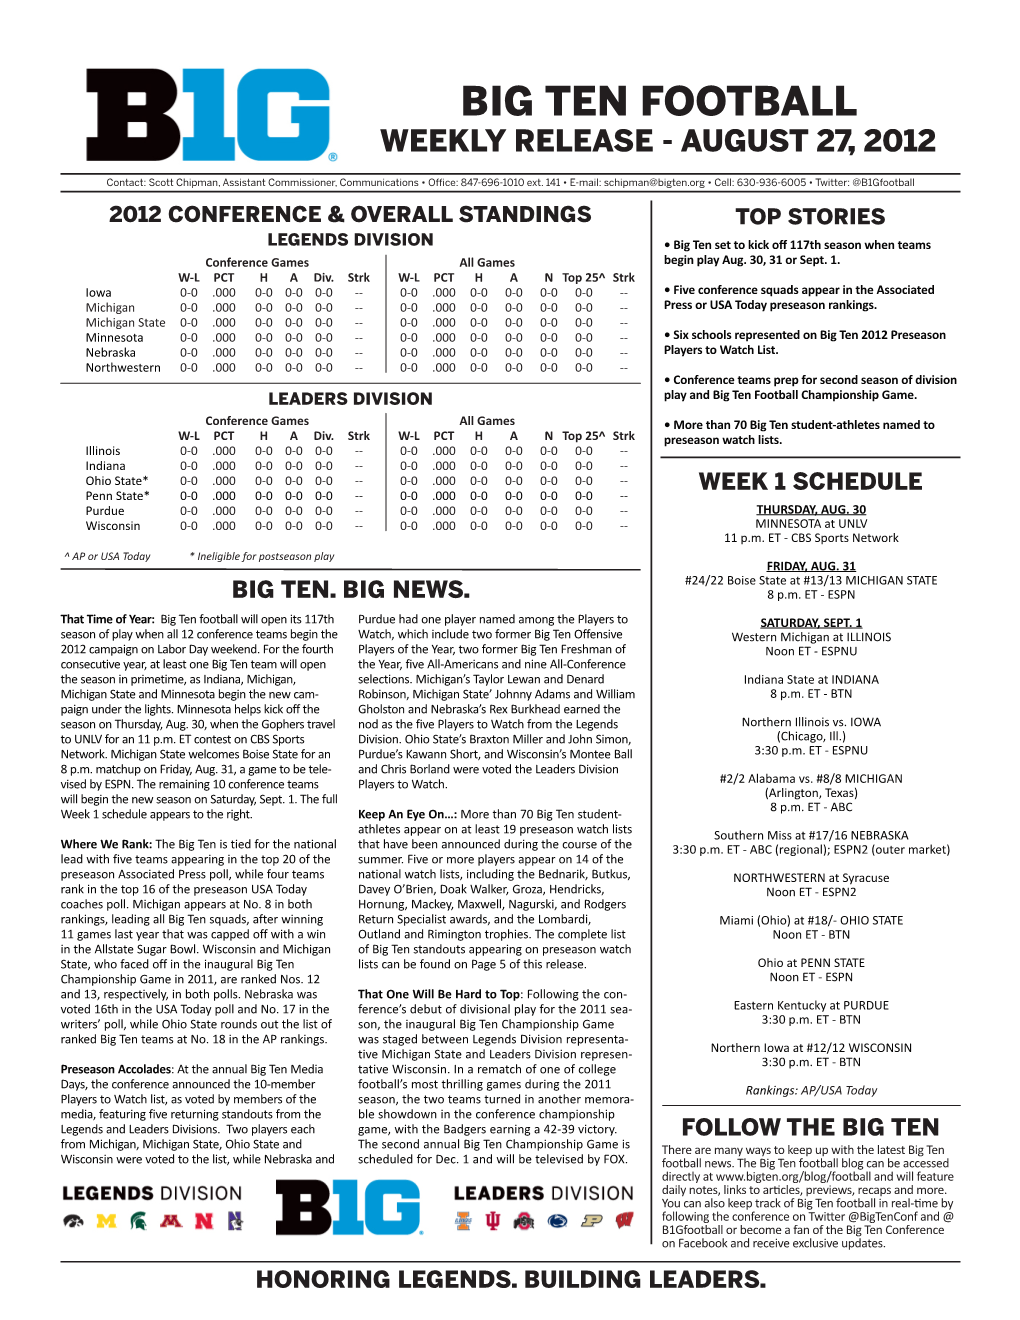 Big Ten Football Weekly Release - August 27, 2012